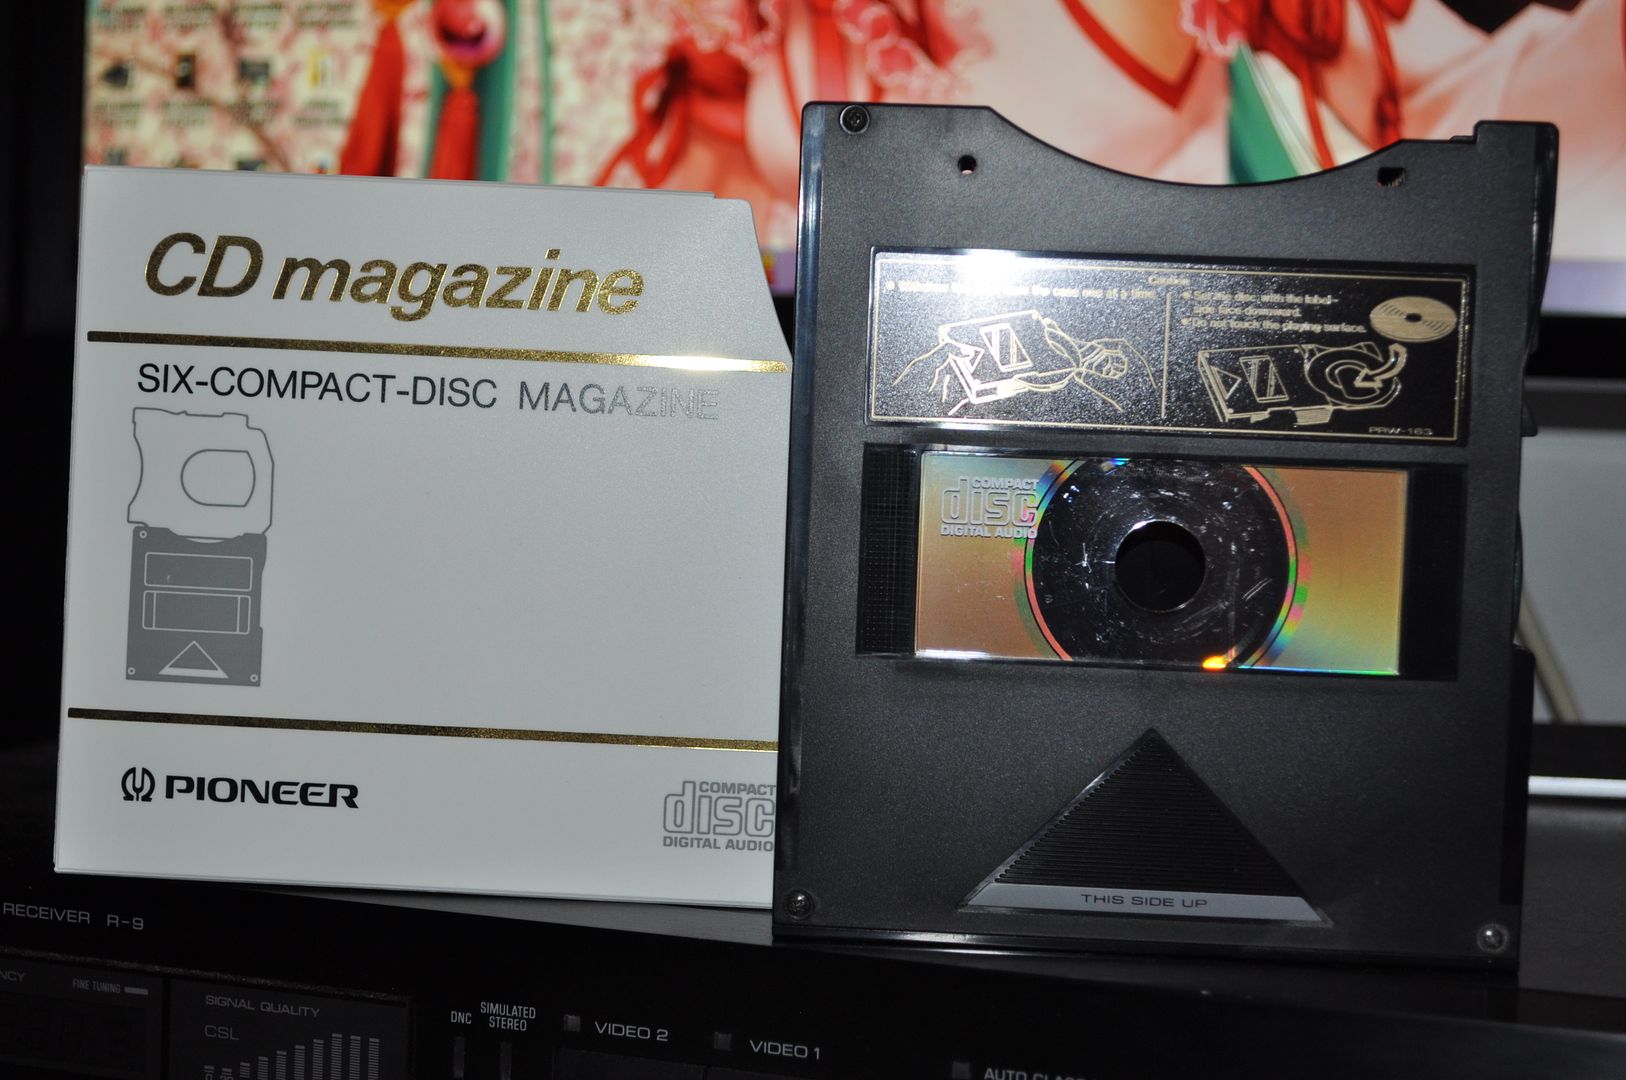 Pioneer JD-M300 Multi-Magazin für CD-Wechsler